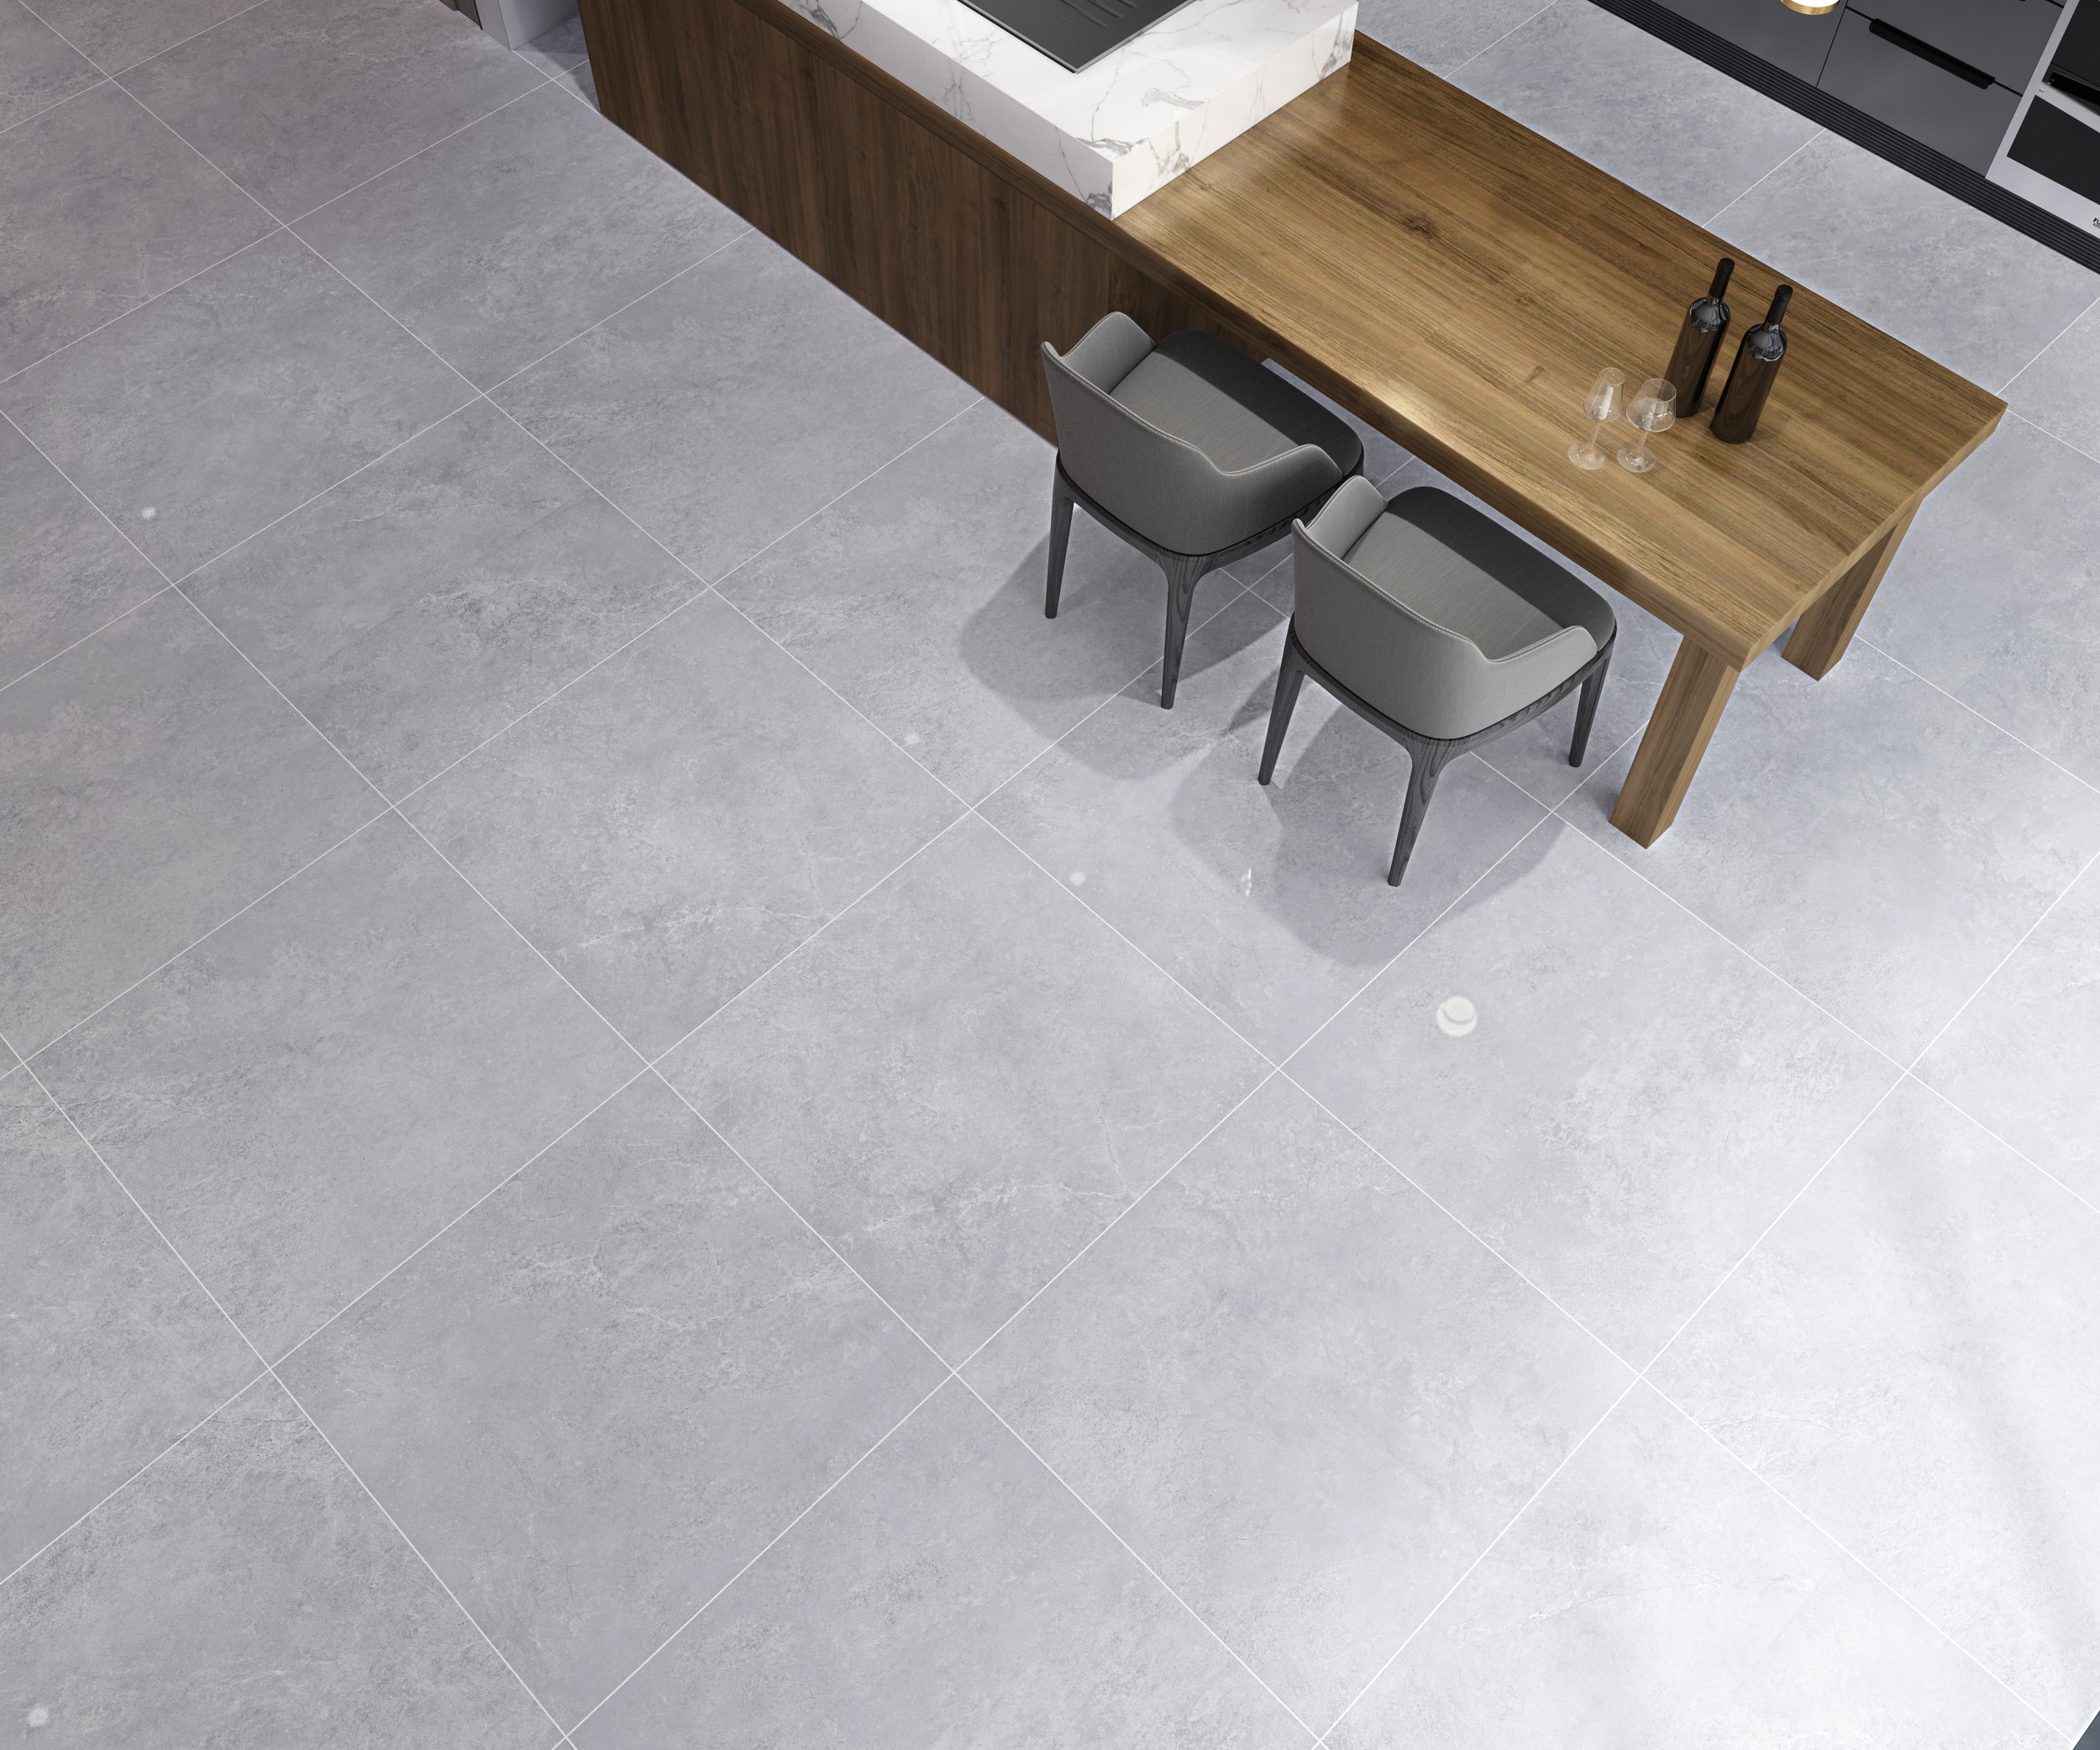 floor tiles in living roomVAT8599p